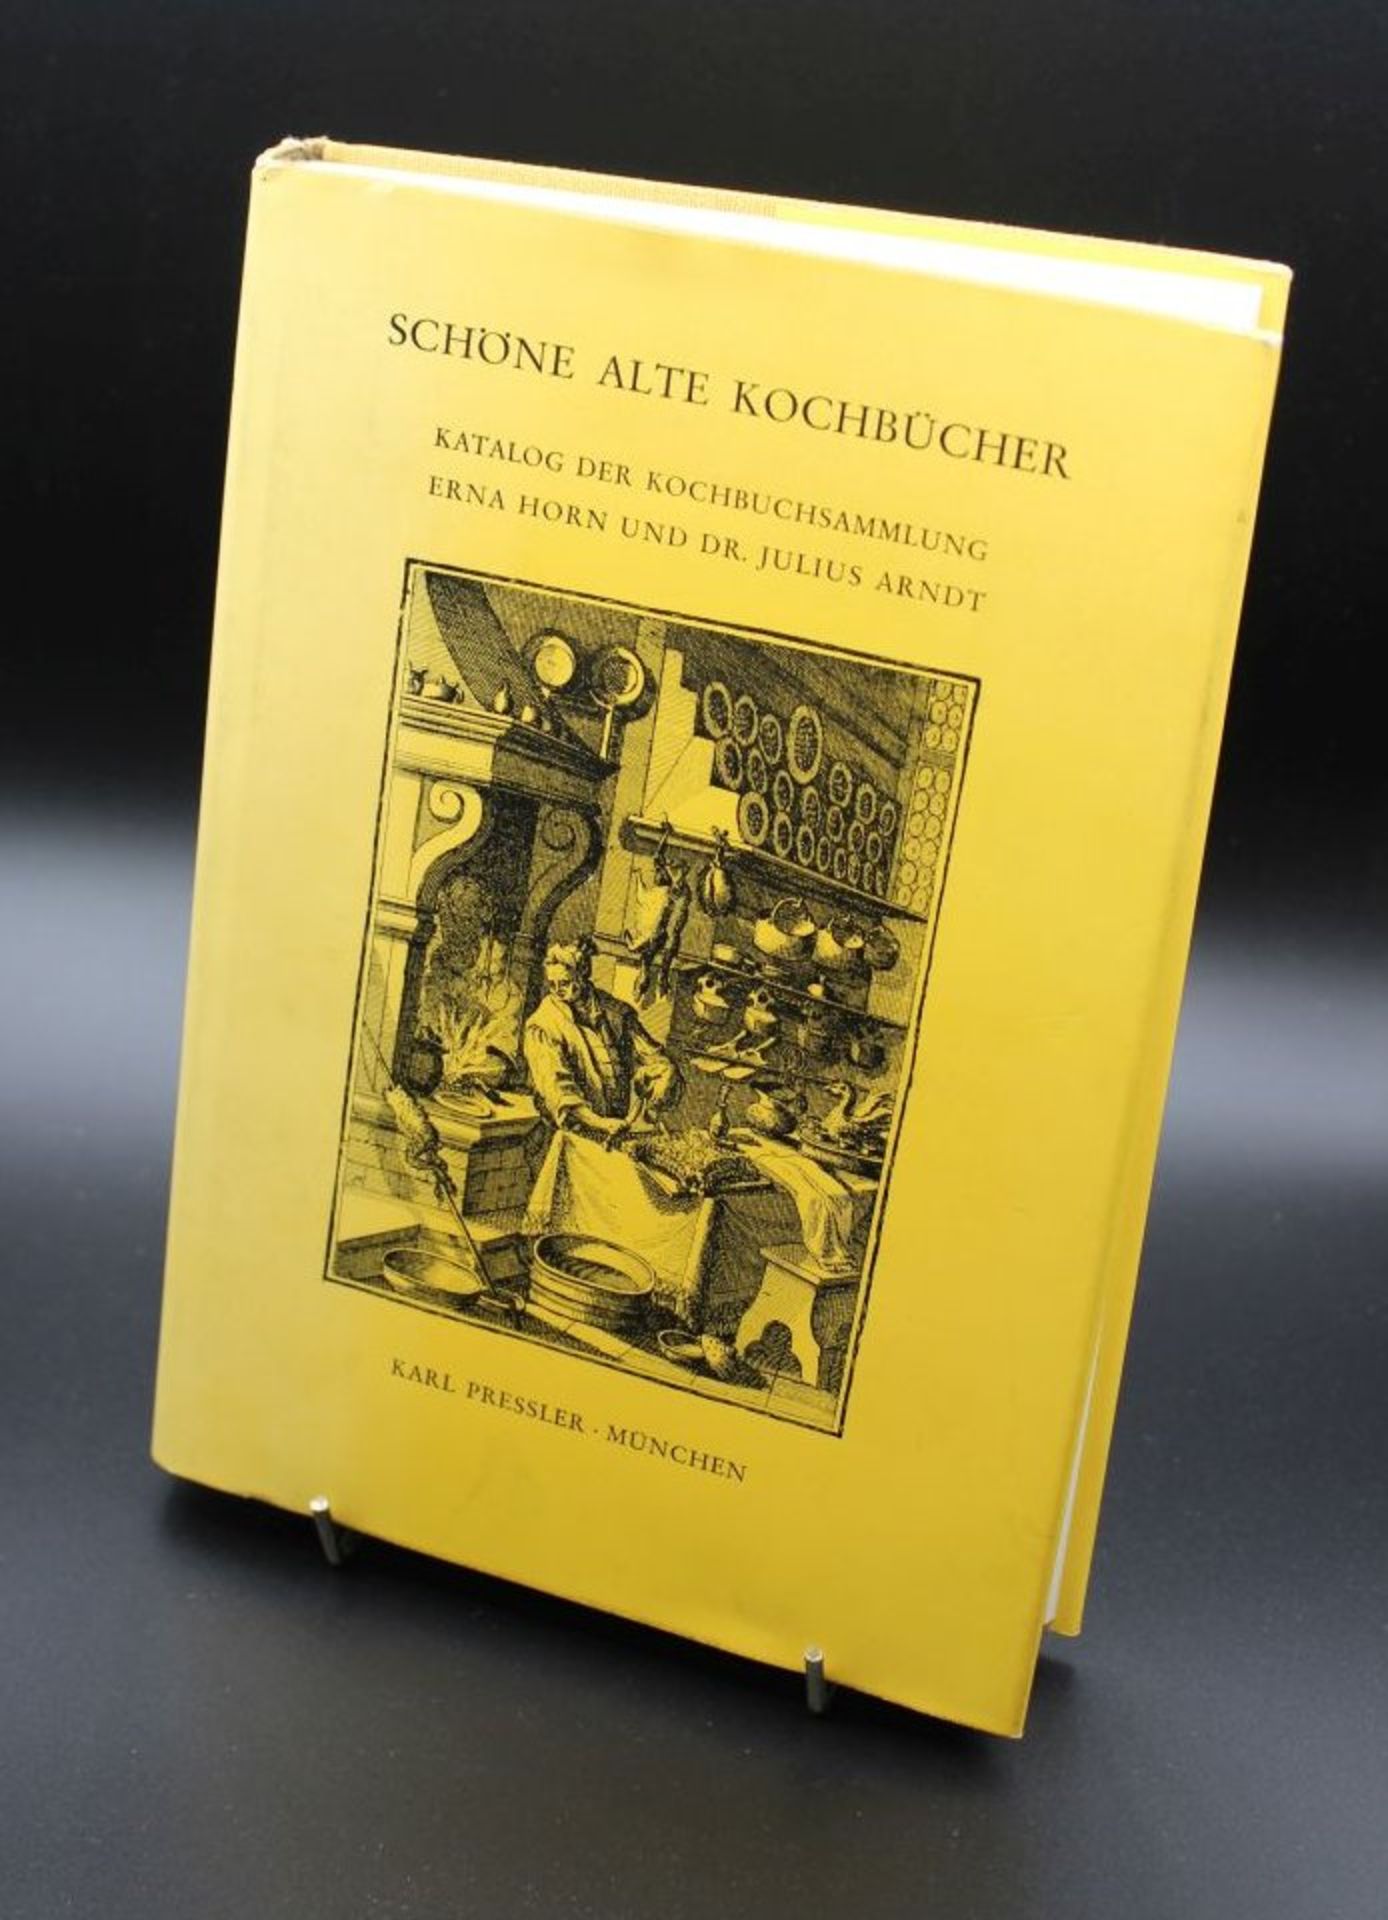 Schöne alte Kochbücher - Katalog der Kochbuchsammlung Erna Horn und Dr. Julius Arndt, 1982